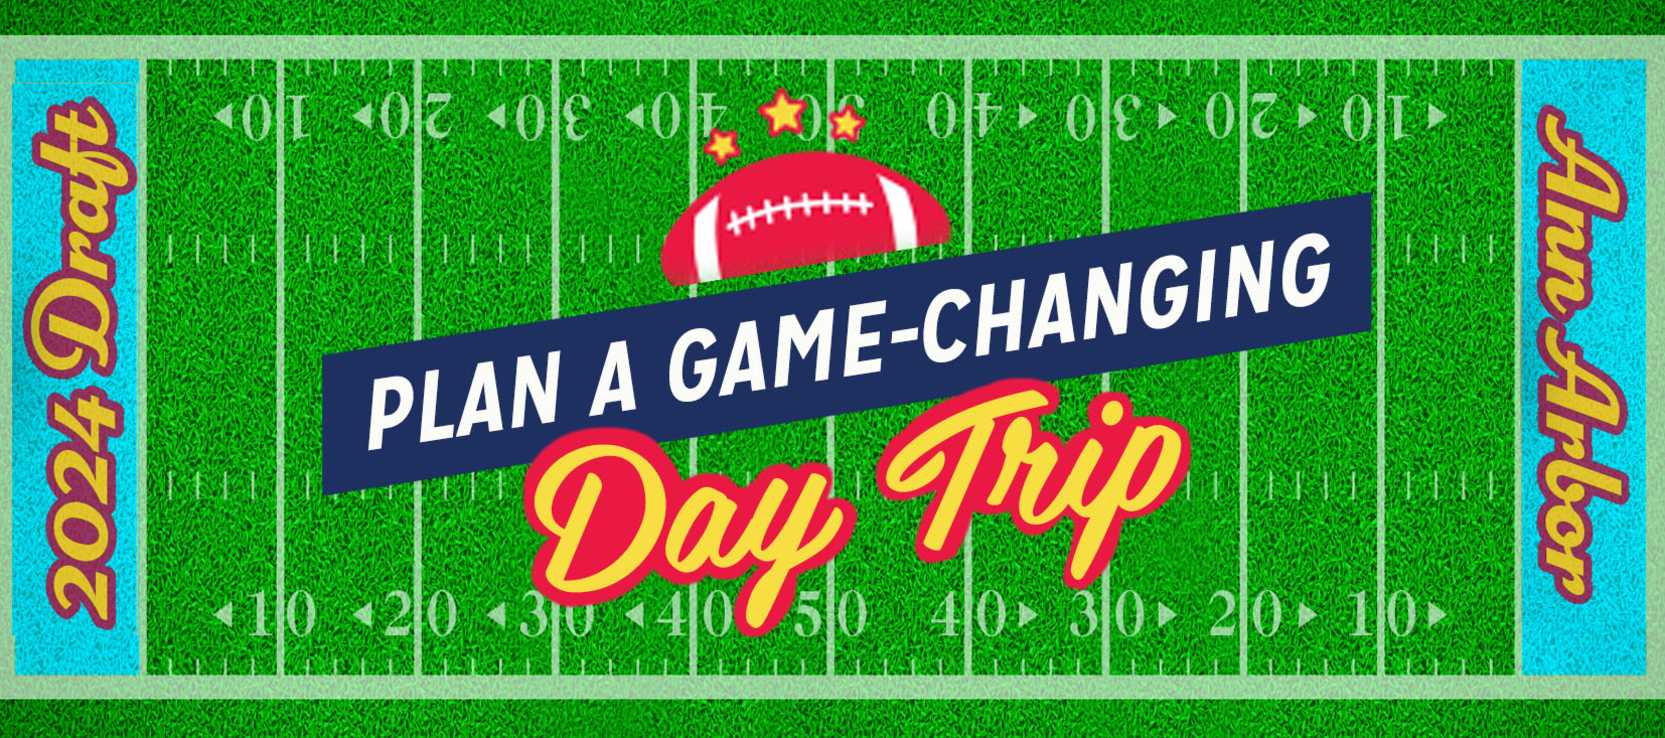 Plan a game-changing draft day-trip